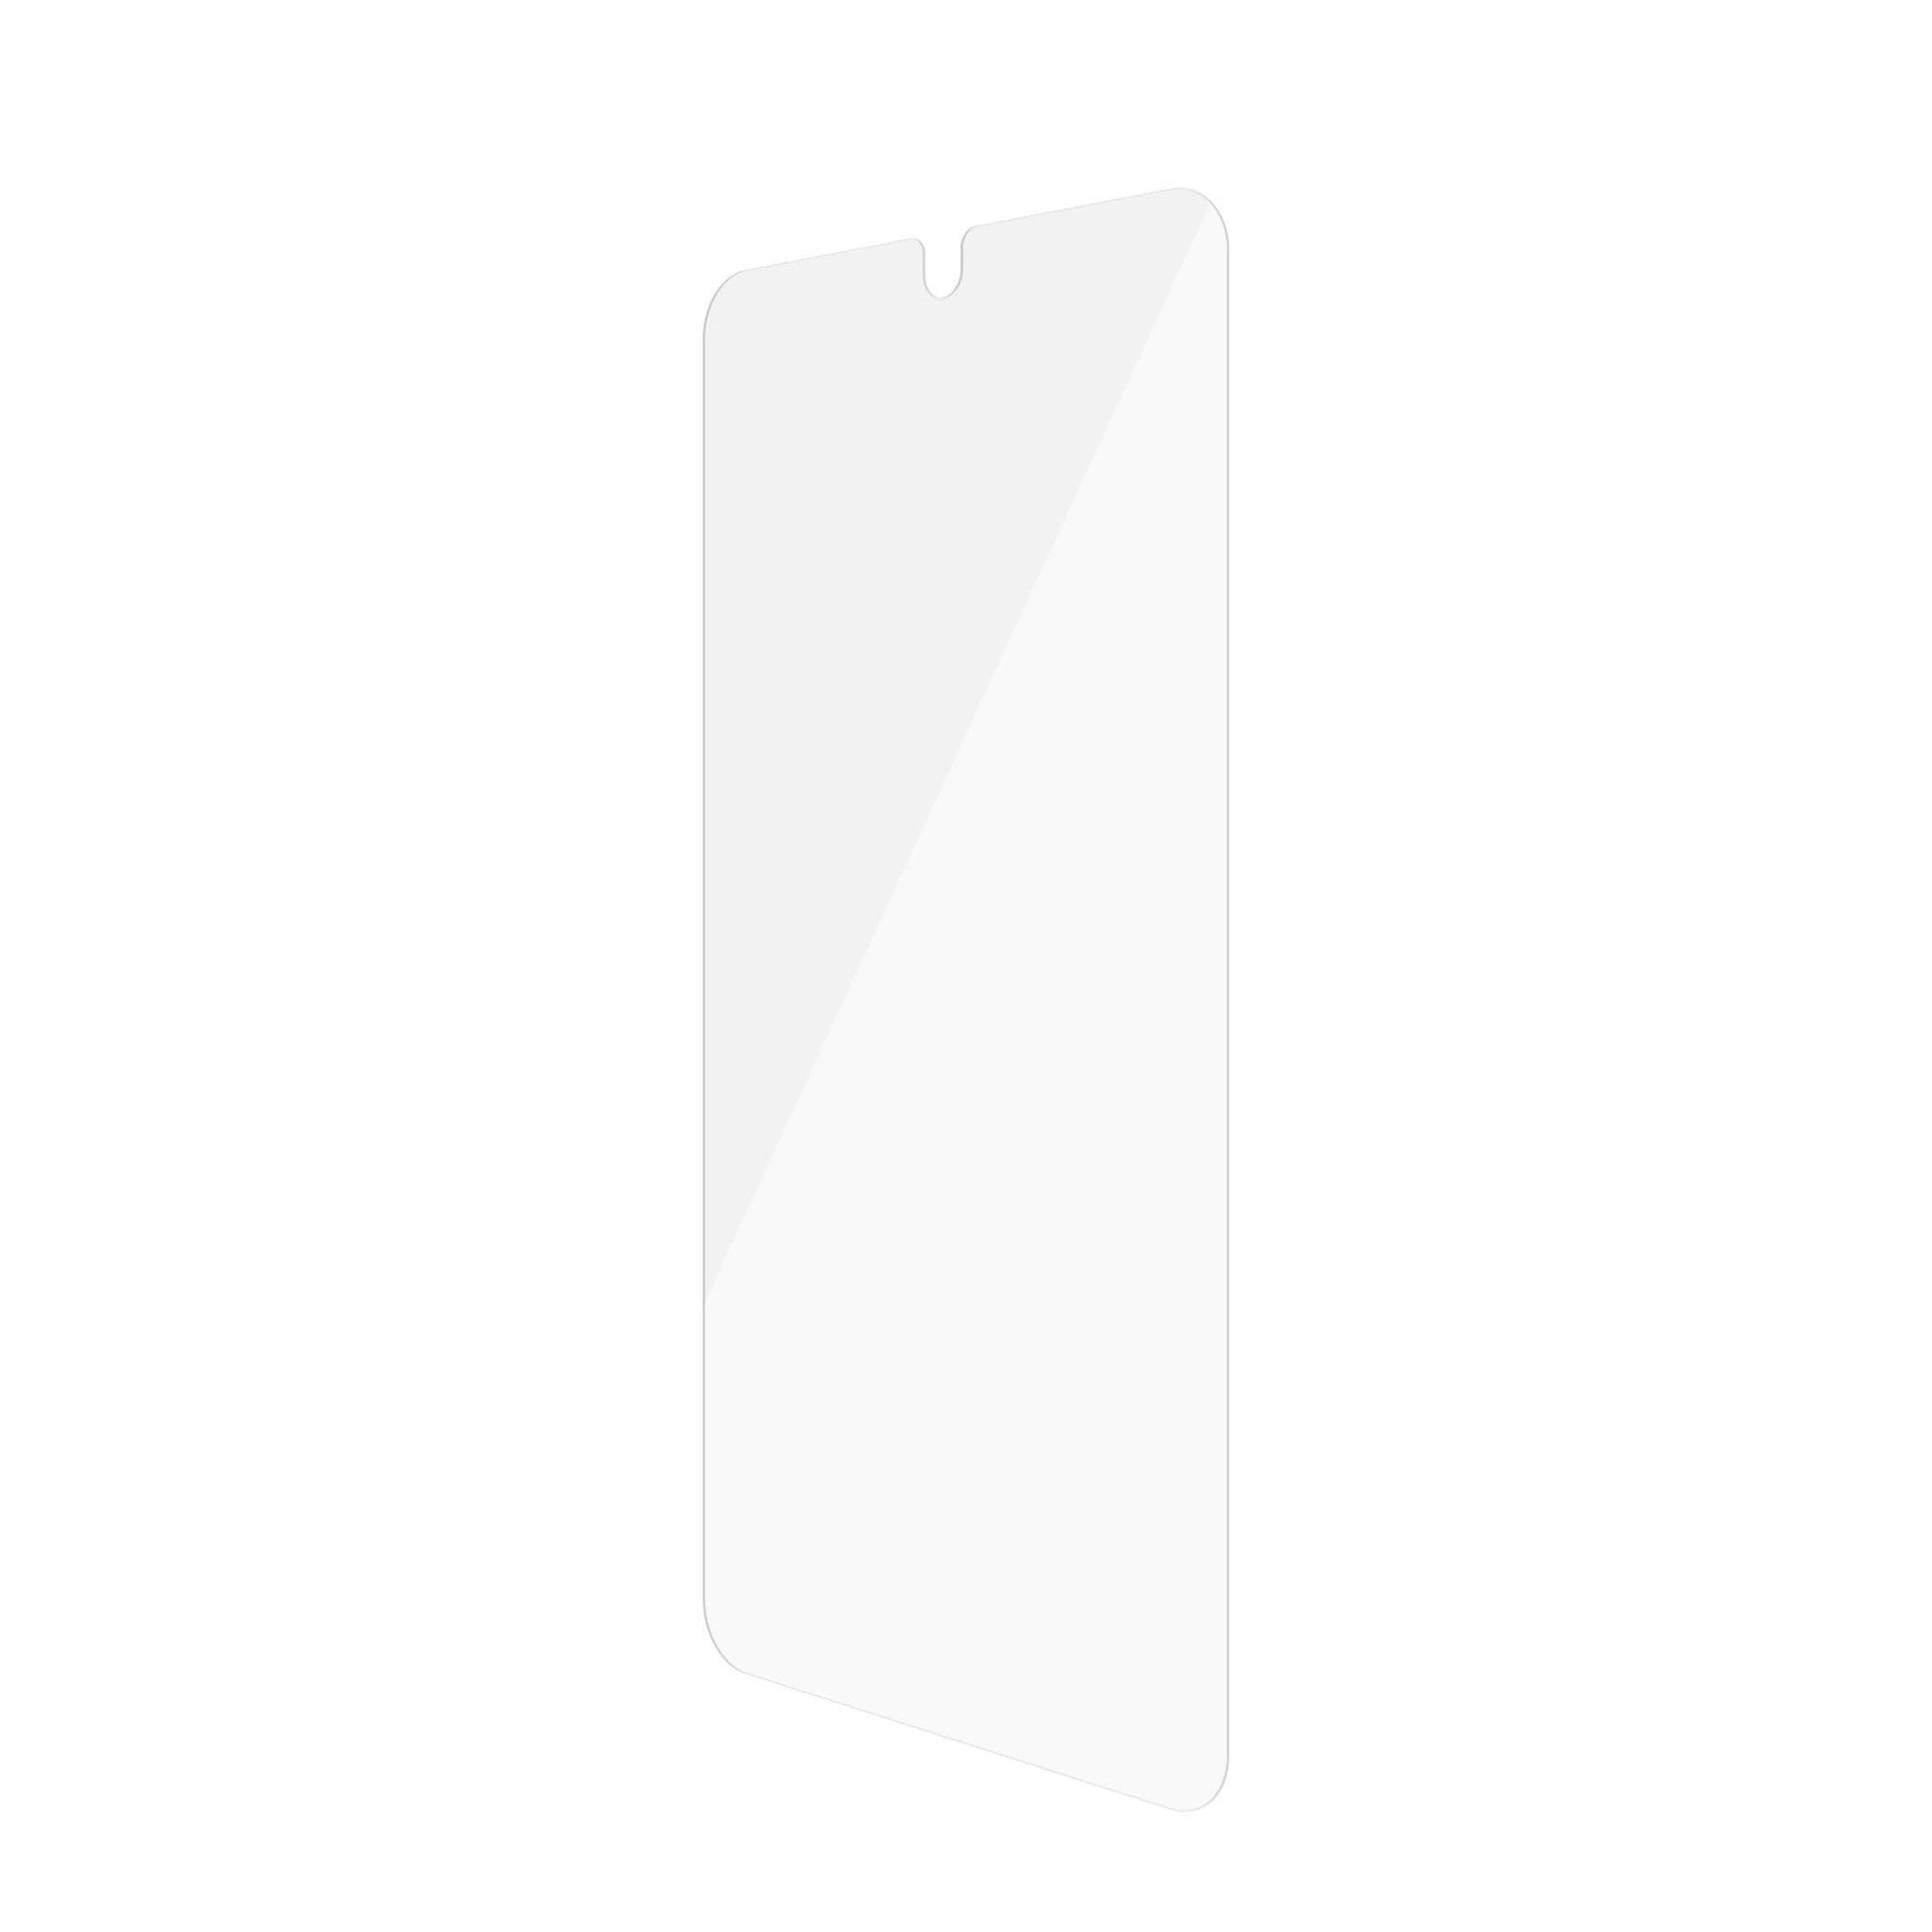 Galaxy S22+) Fit Ultra-Wide Samsung PANZERGLASS Displayschutzglas(für